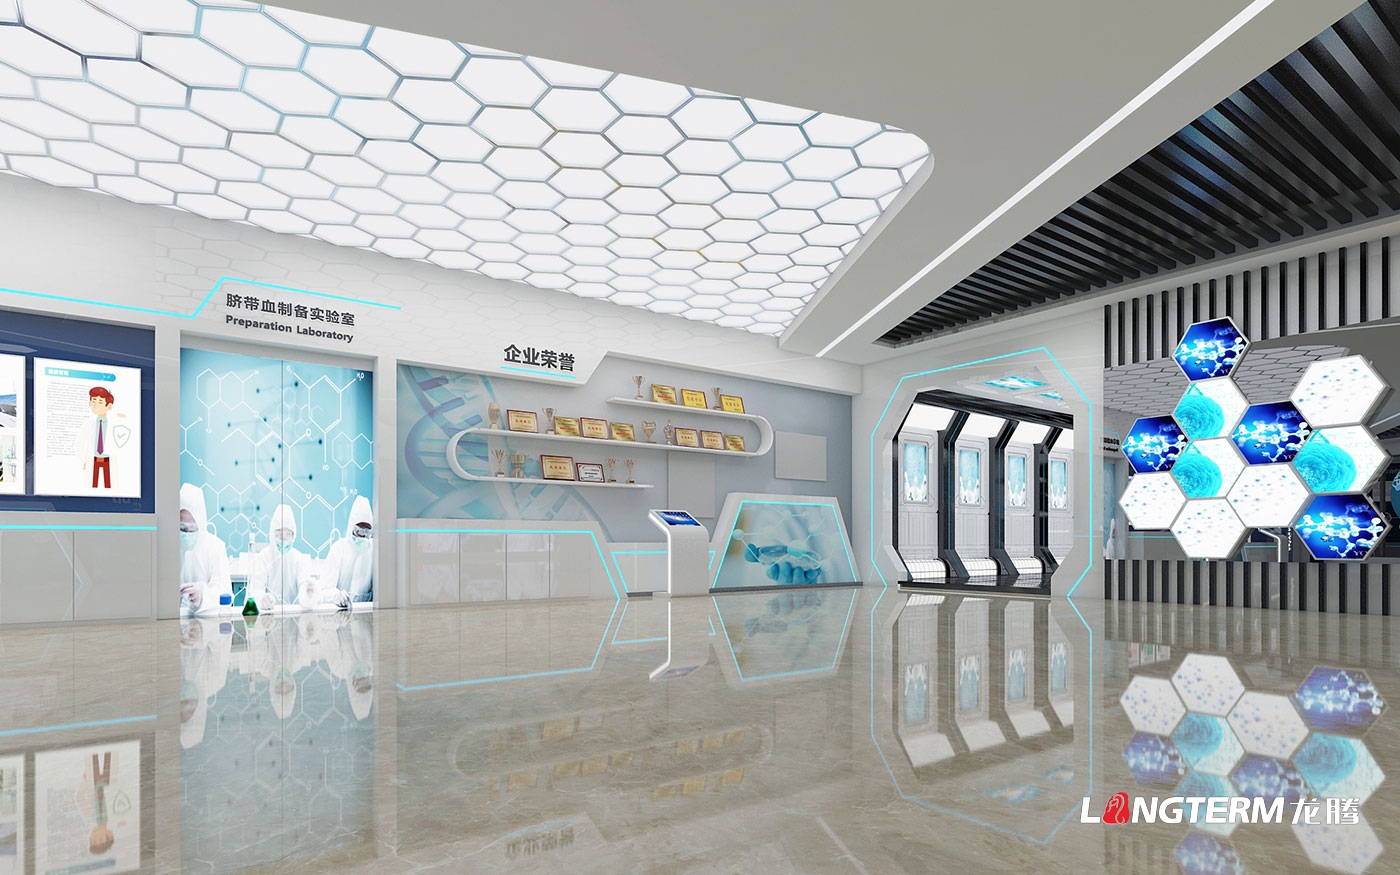 成都市科普教育基地(新生命干细胞)大厅升级改造设计效果图——科技化、数字化、互动化展览展示